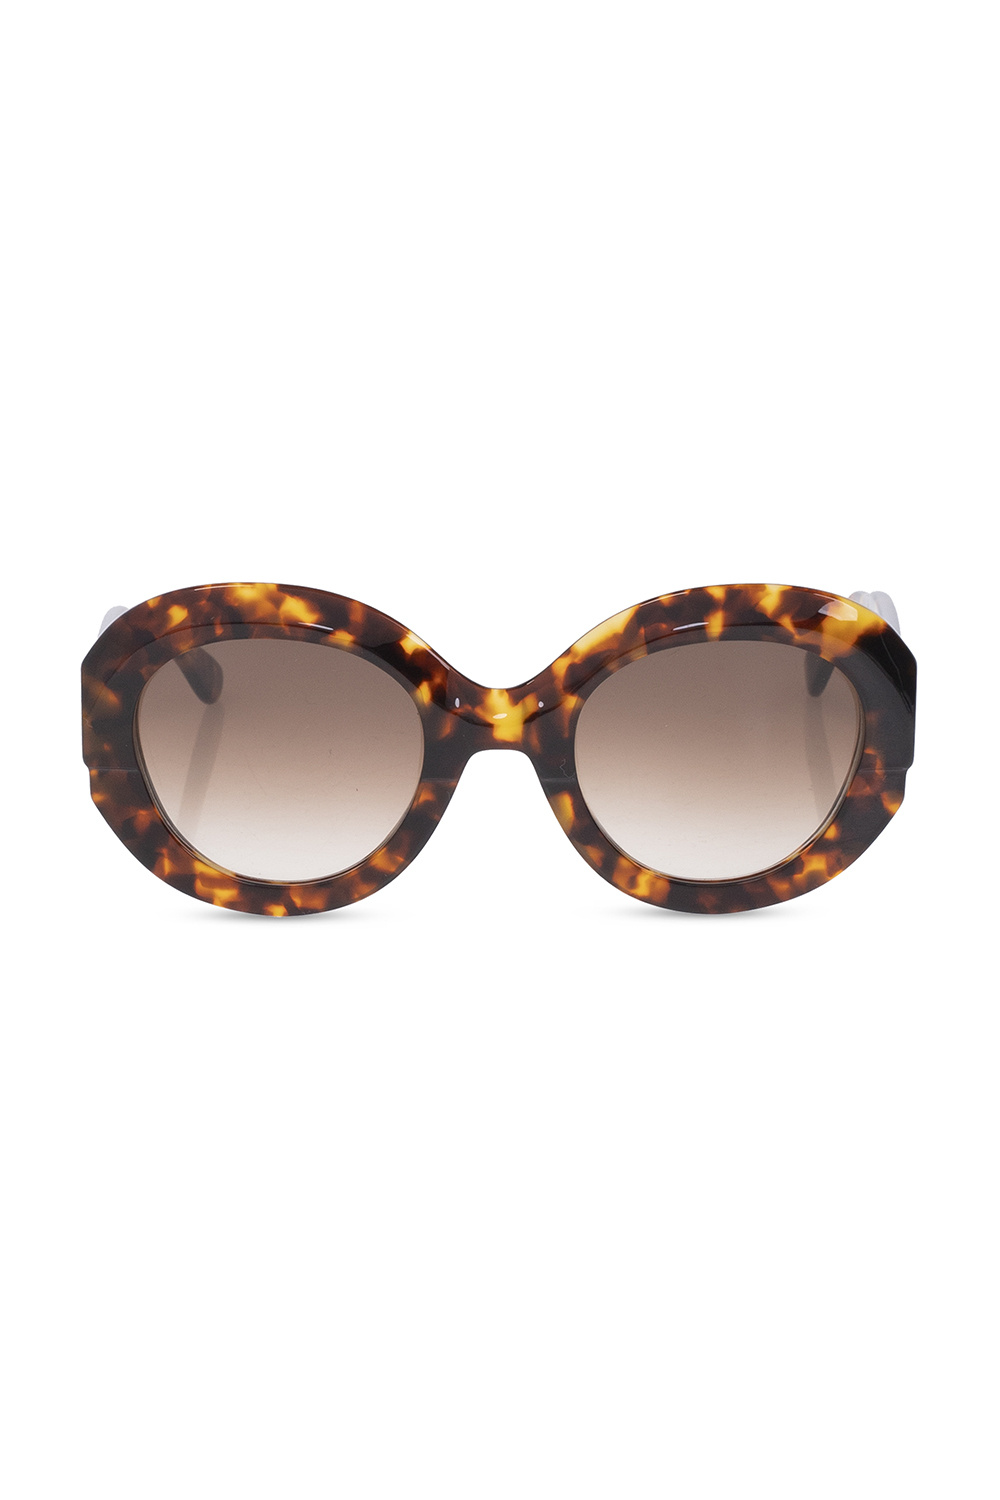 Emmanuelle Khanh JACQUES MARIE MAGE Gold Enfant Riches Déprimés Limited Edition Sidewalk Doctor Sunglasses